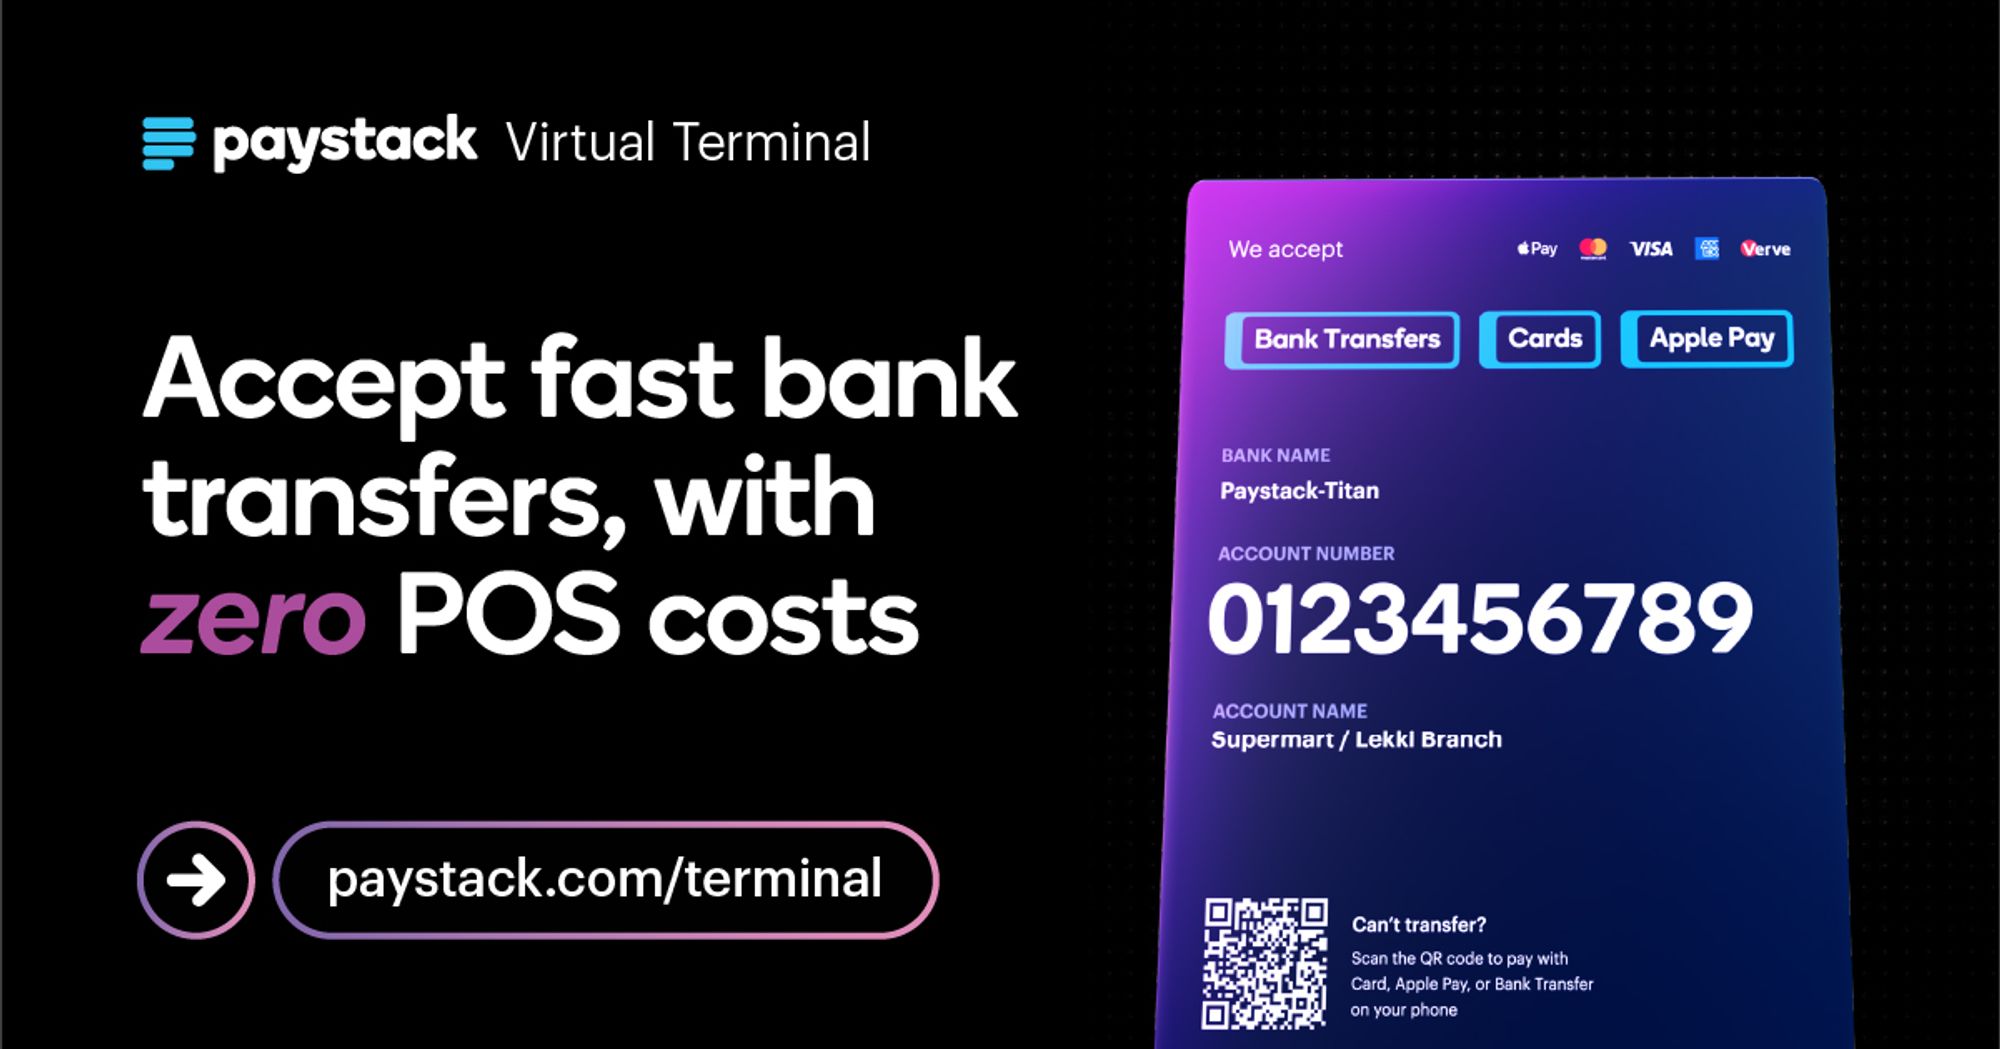 Paystack Virtual Terminal